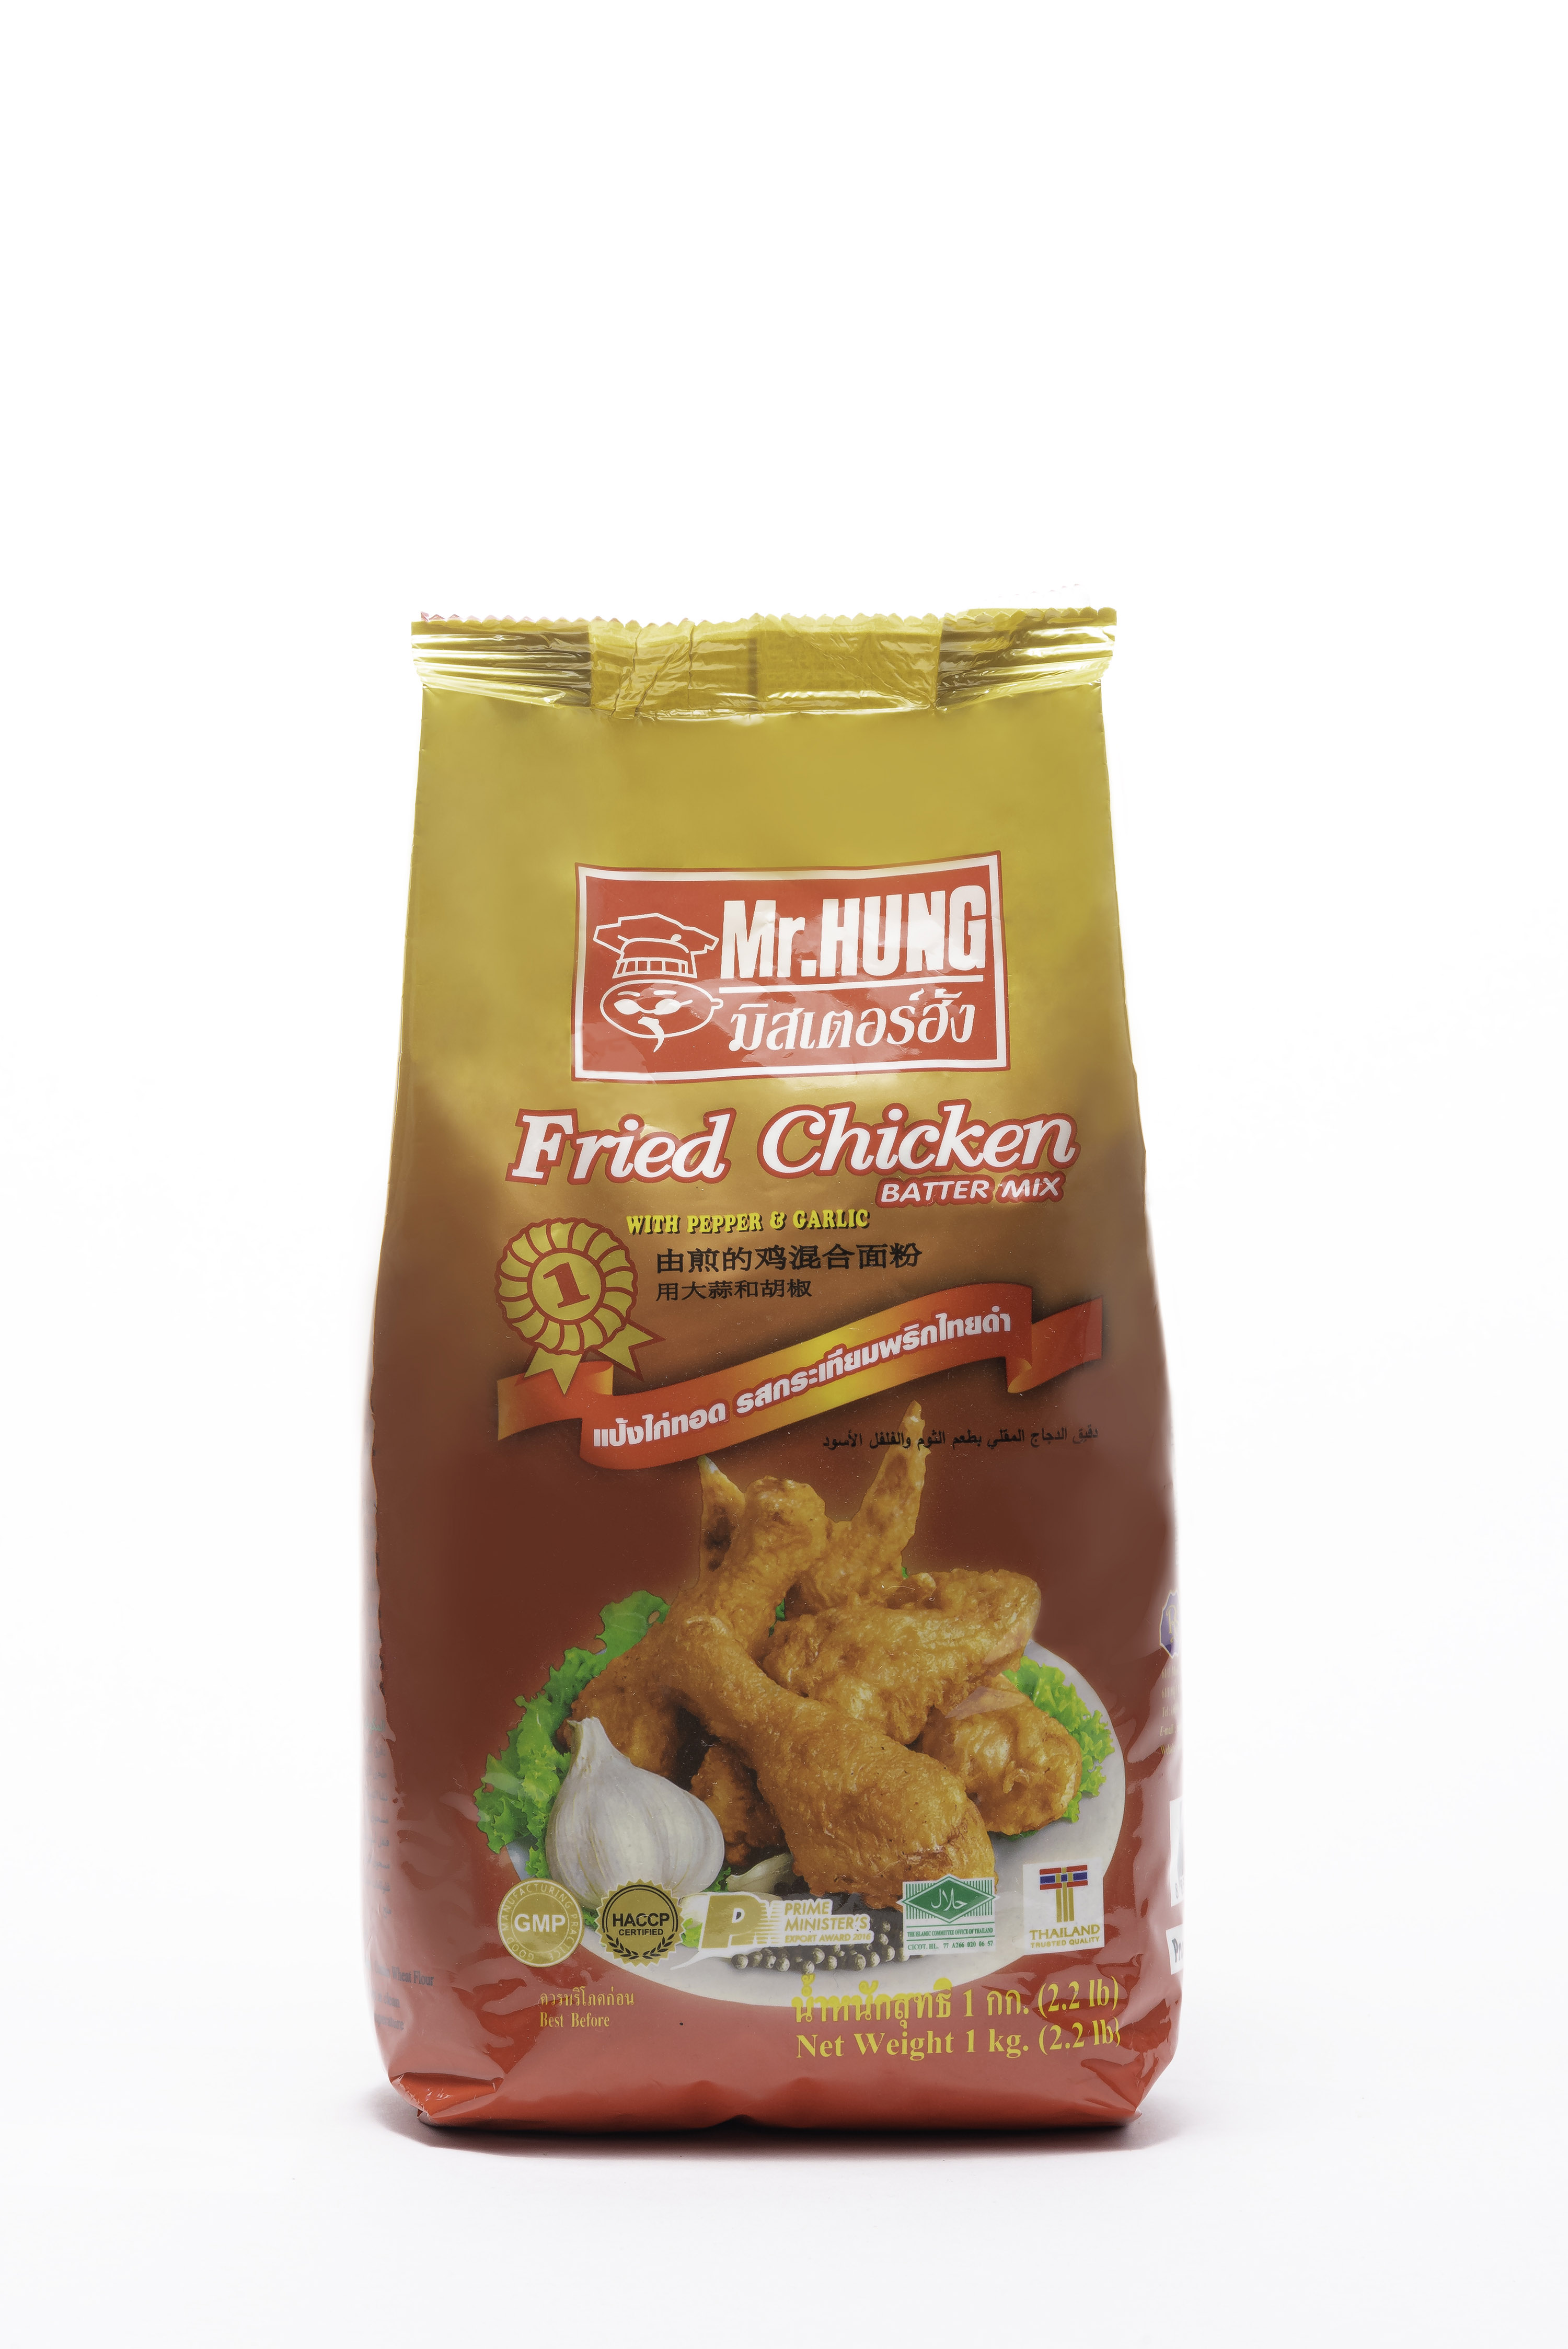 Fried Chicken Batter Mix Flour - Mr.HUNG Brand